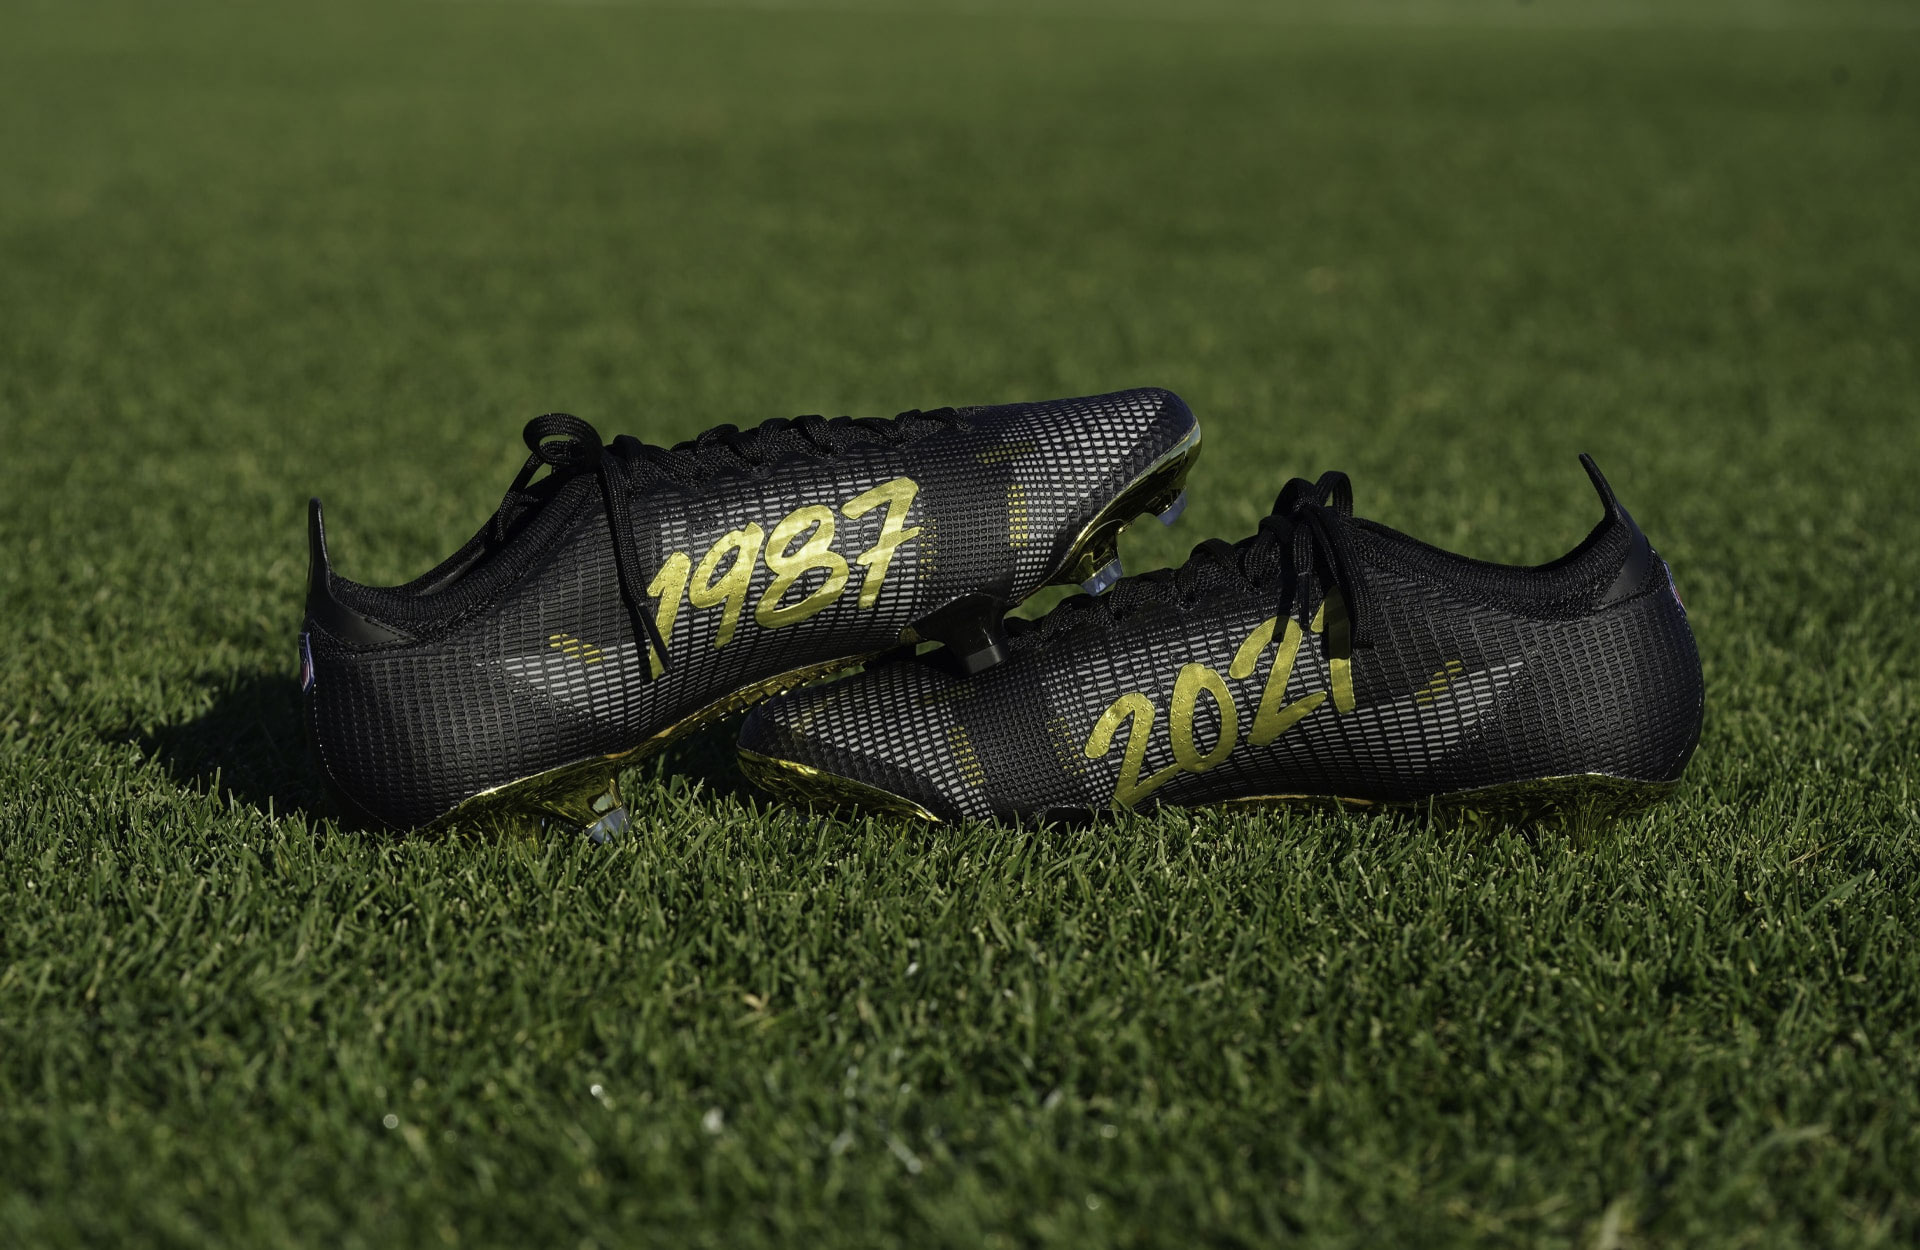 Giới thiệu giày đá bóng Nike Mercurial Superfly 360 tùy chỉnh dành tặng Carli Lloyd